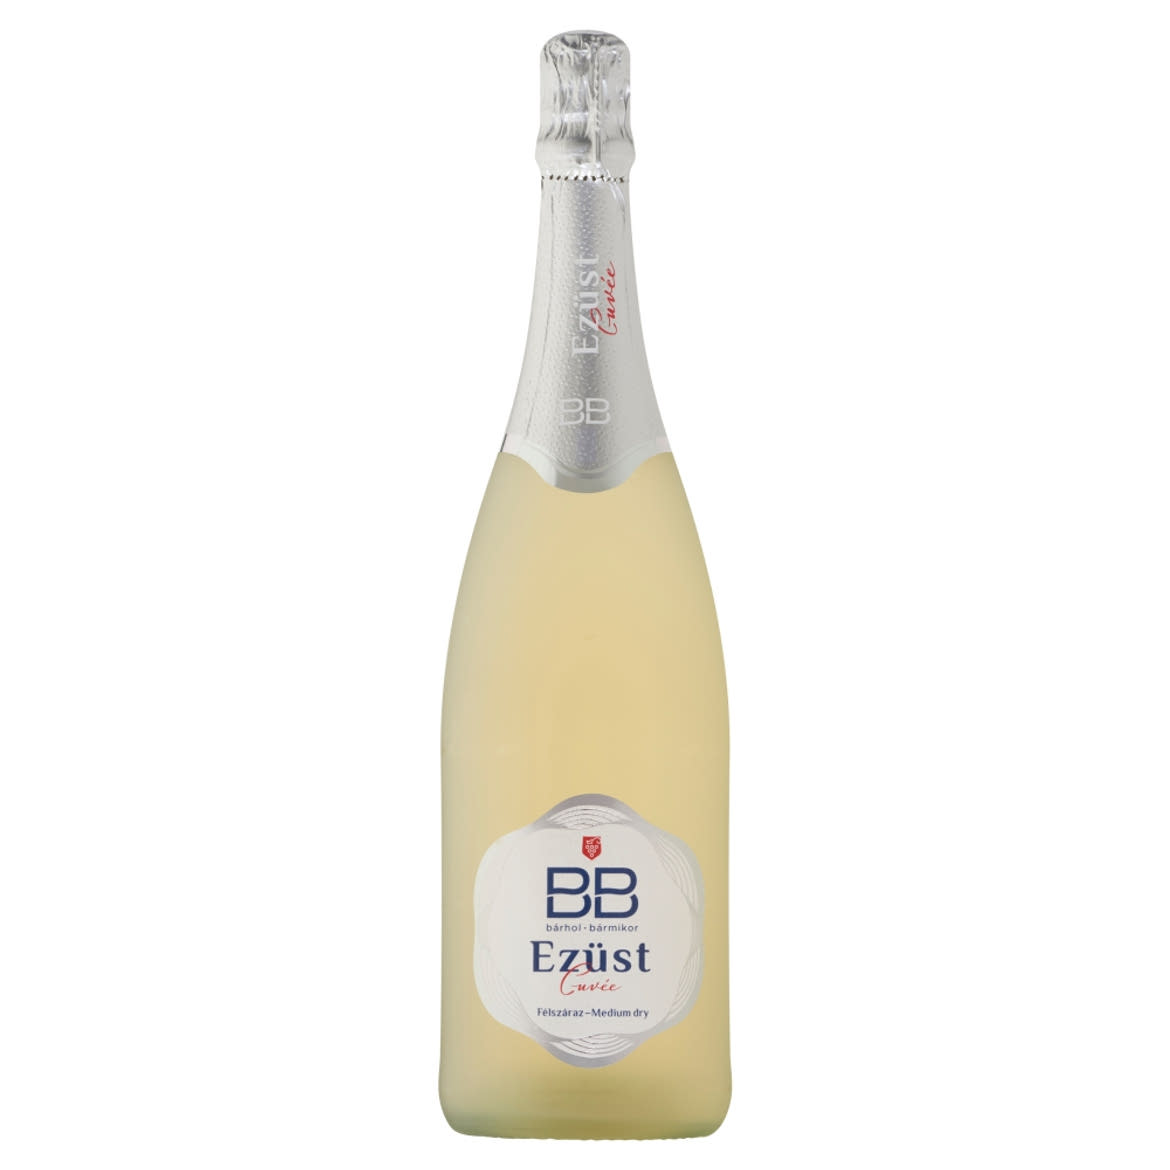 BB Ezüst Cuvée félszáraz fehér pezsgő